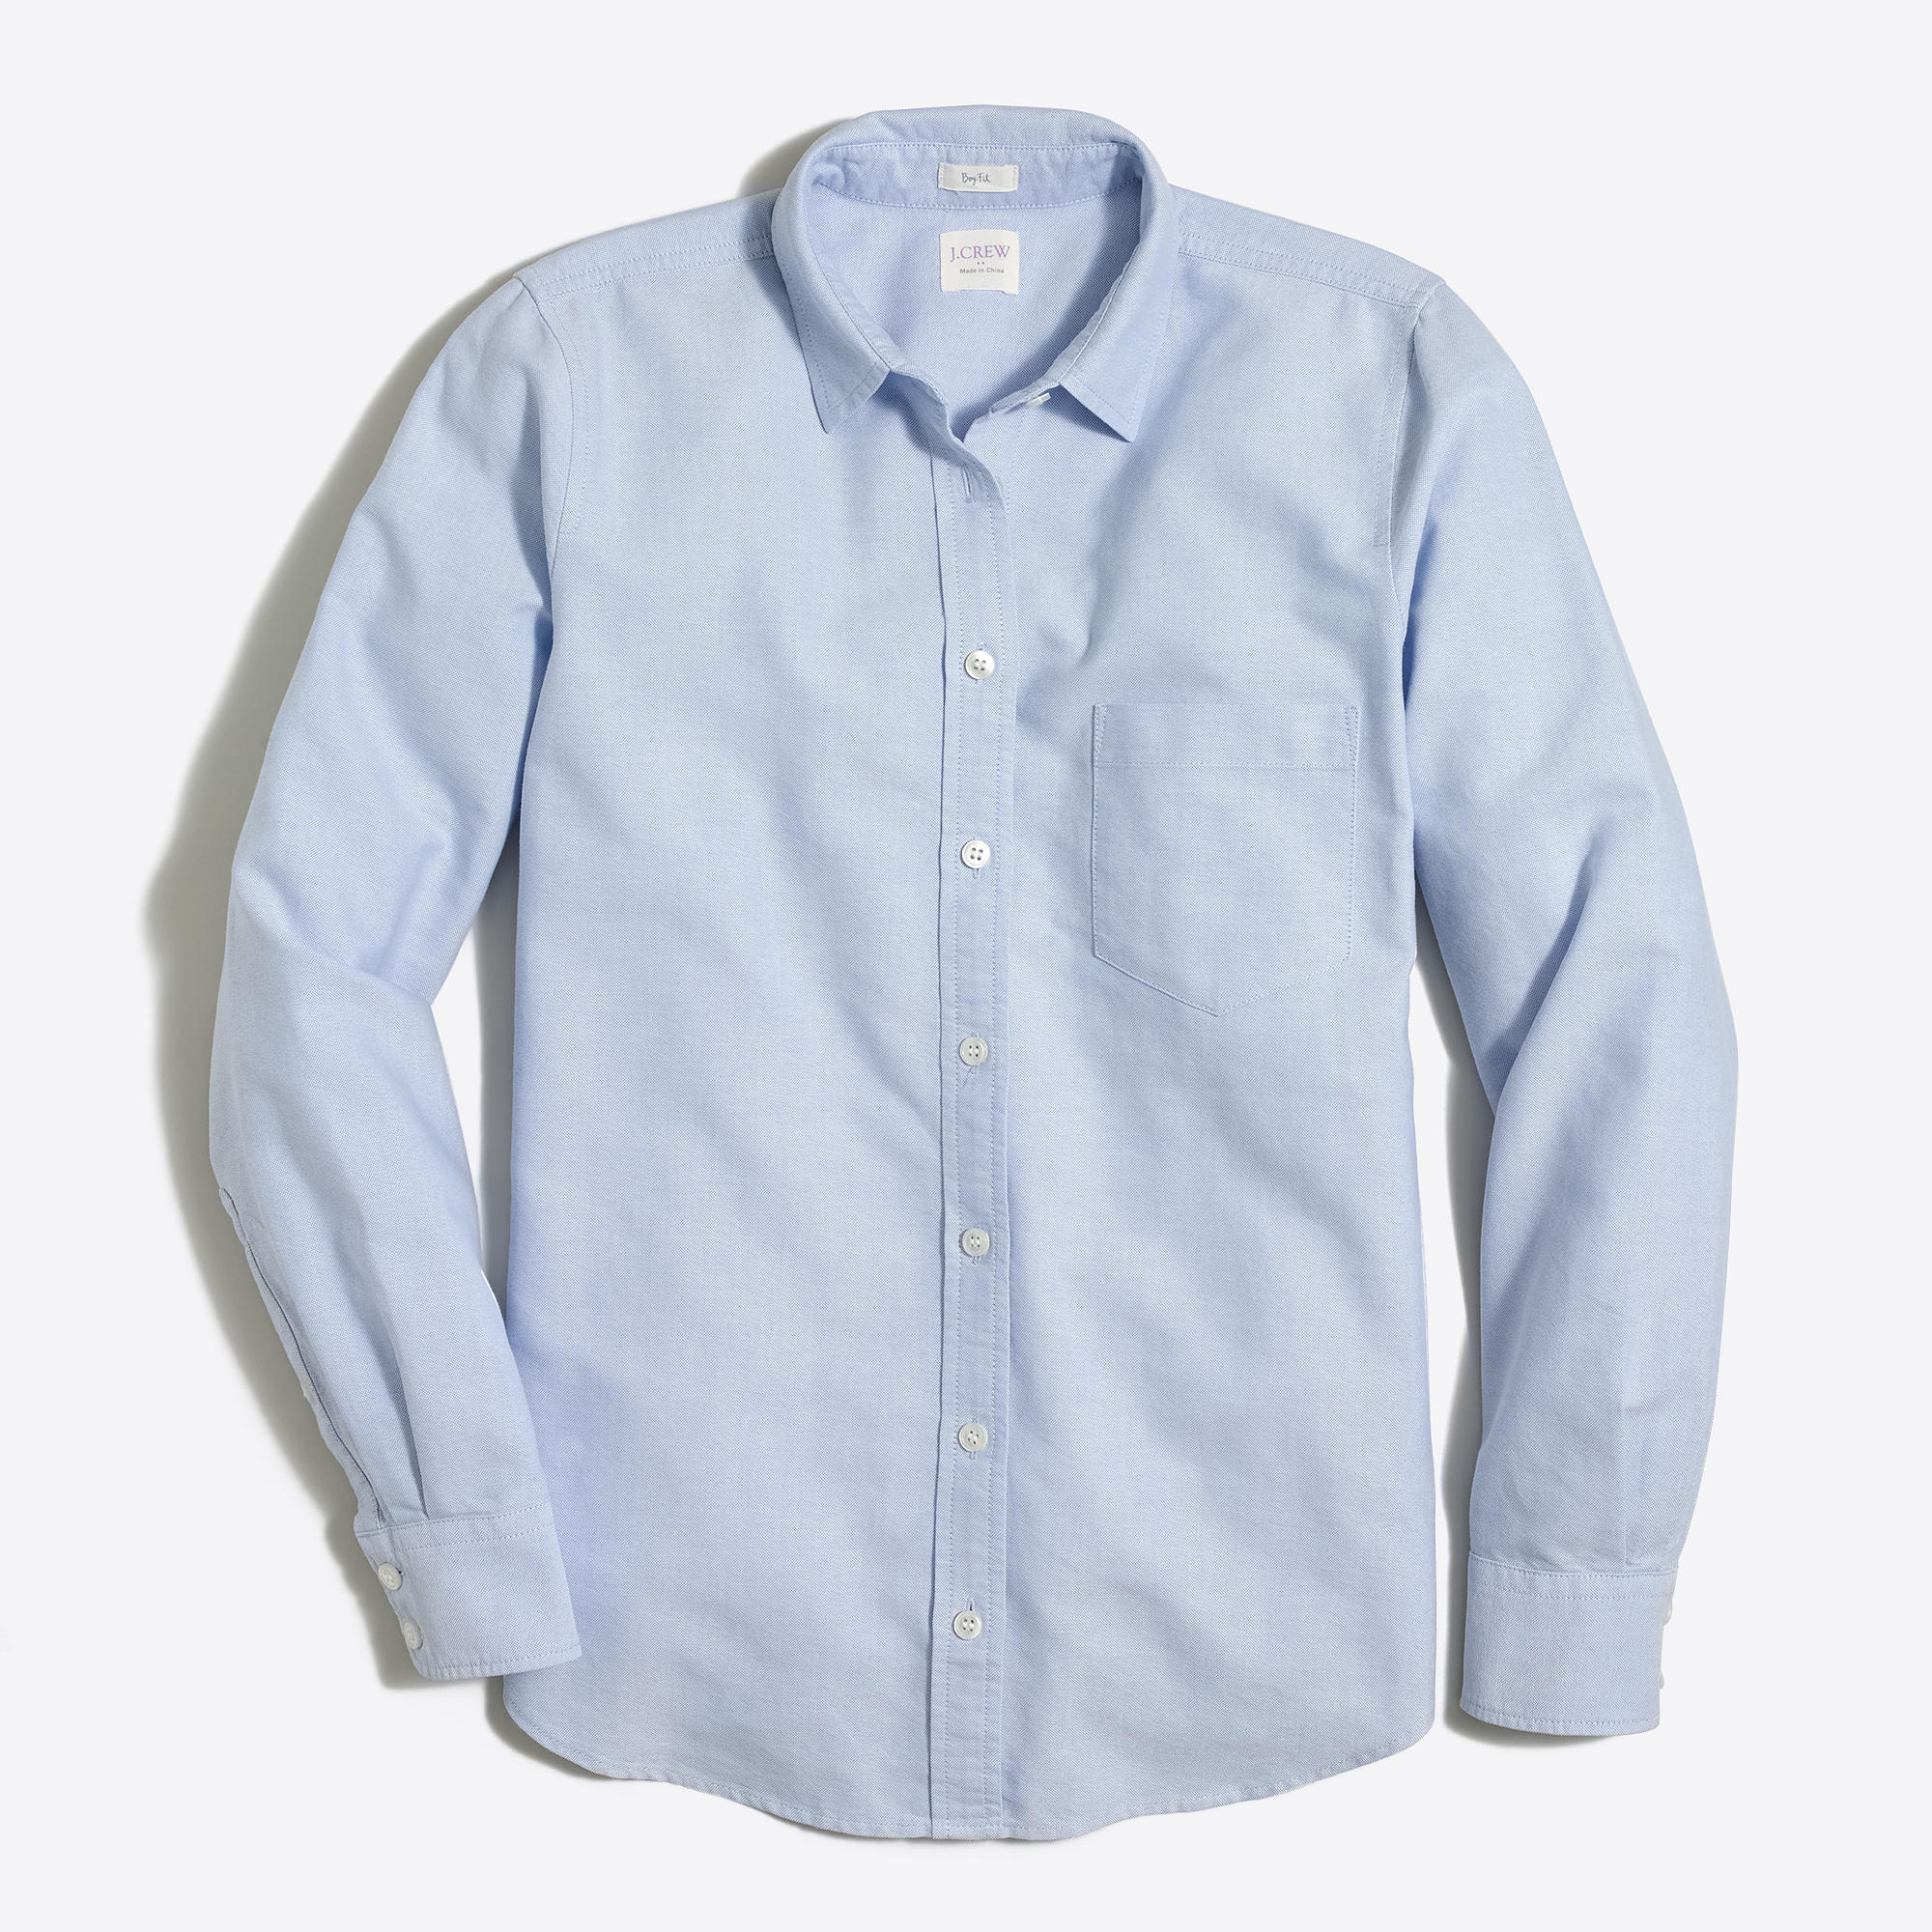 Oxford shirt : FactoryWomen Button-Ups | Factory